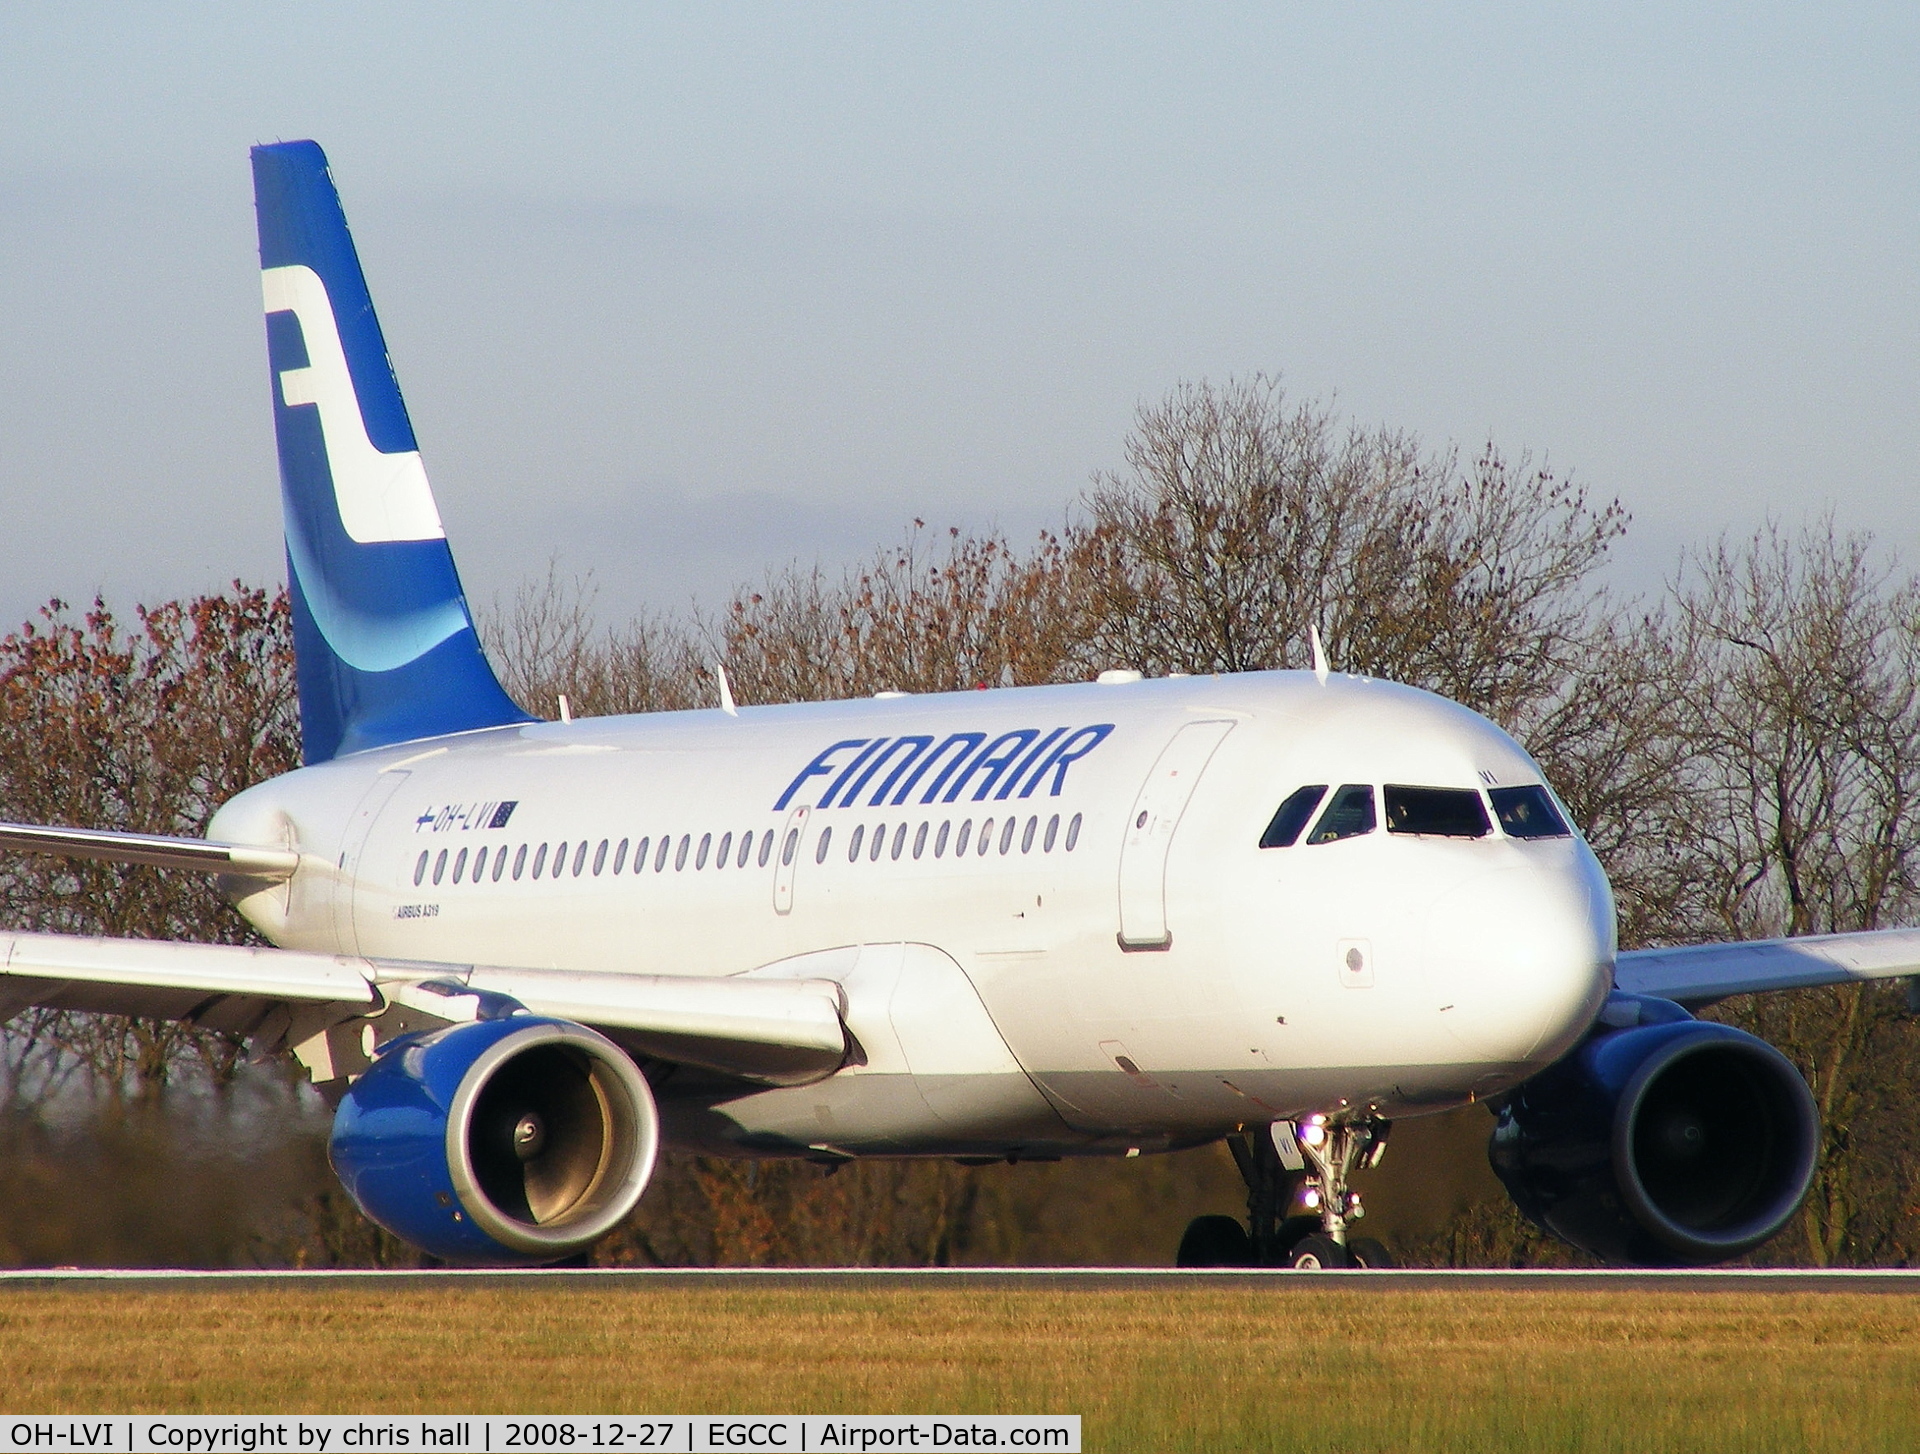 OH-LVI, 2000 Airbus A319-112 C/N 1364, Finnair